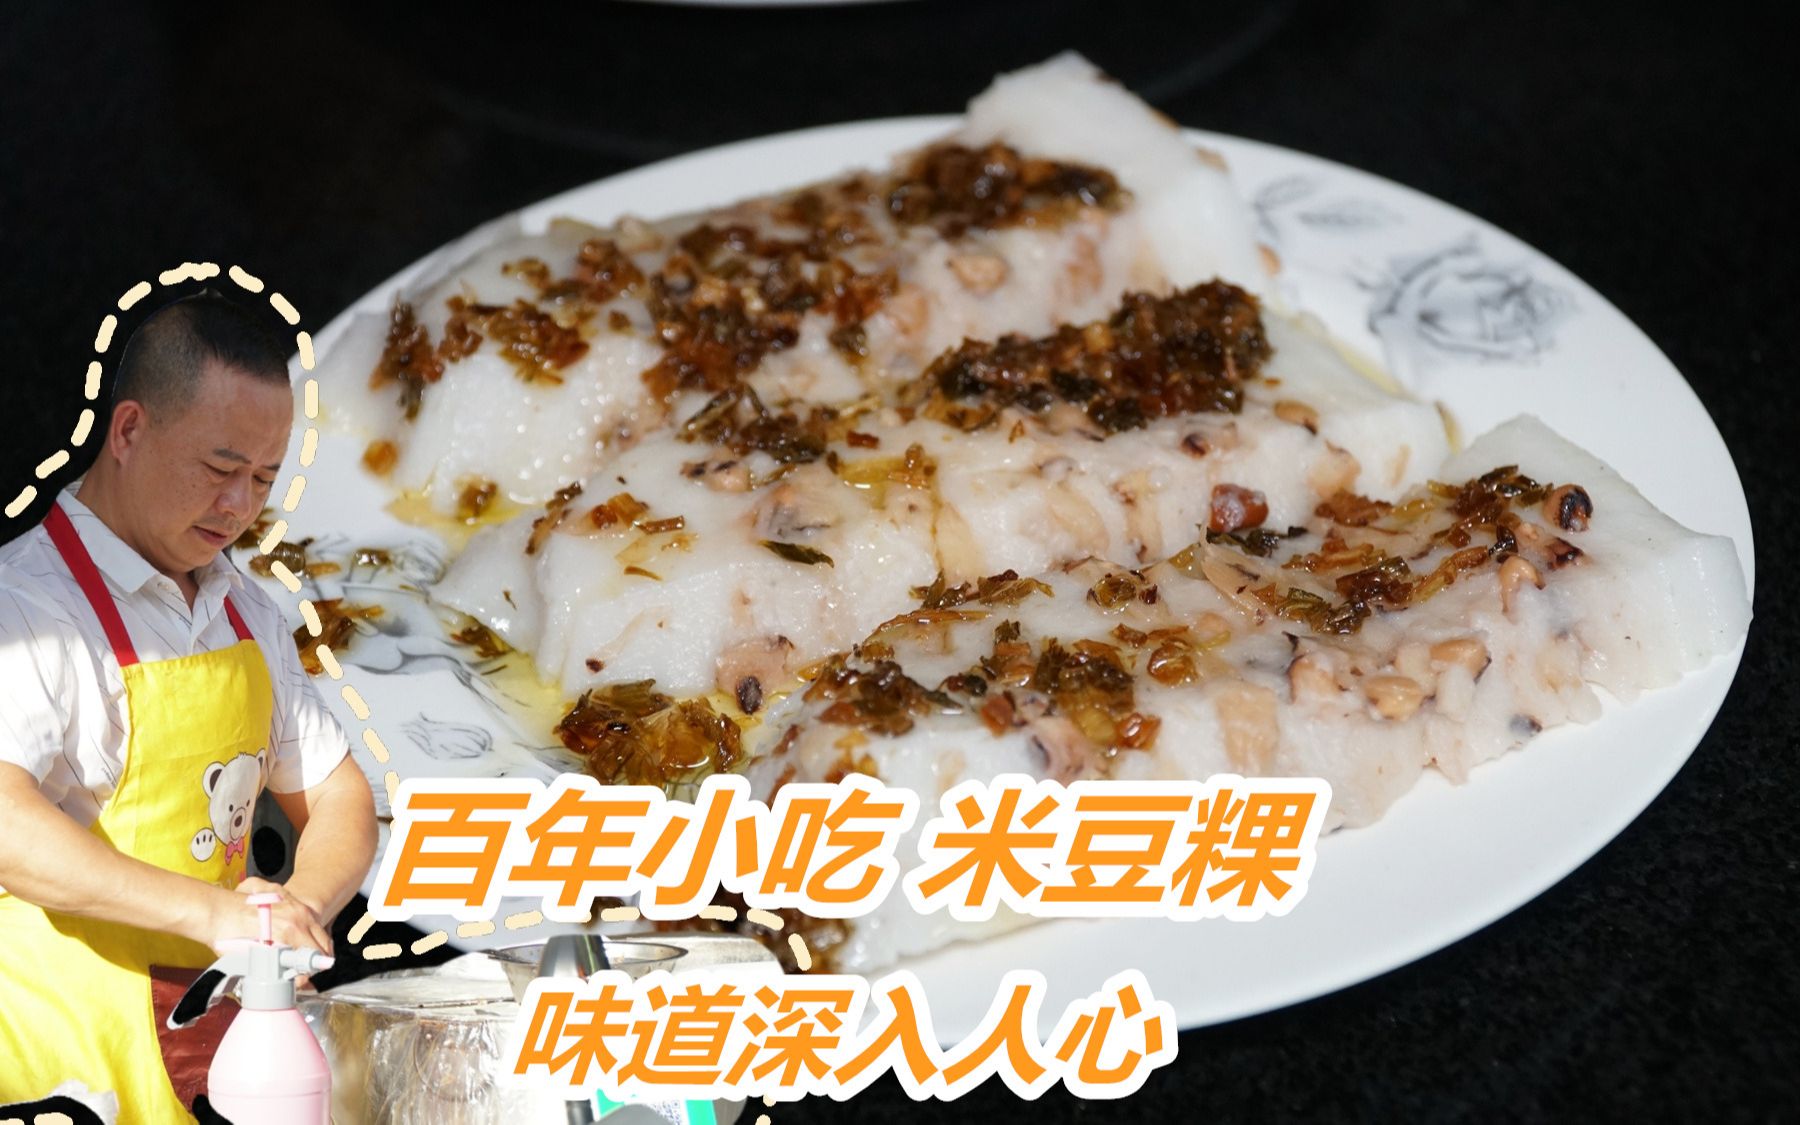 潮汕百年传统小吃米豆粿:澄海夫妇1天卖500斤,印度人说是千层糕